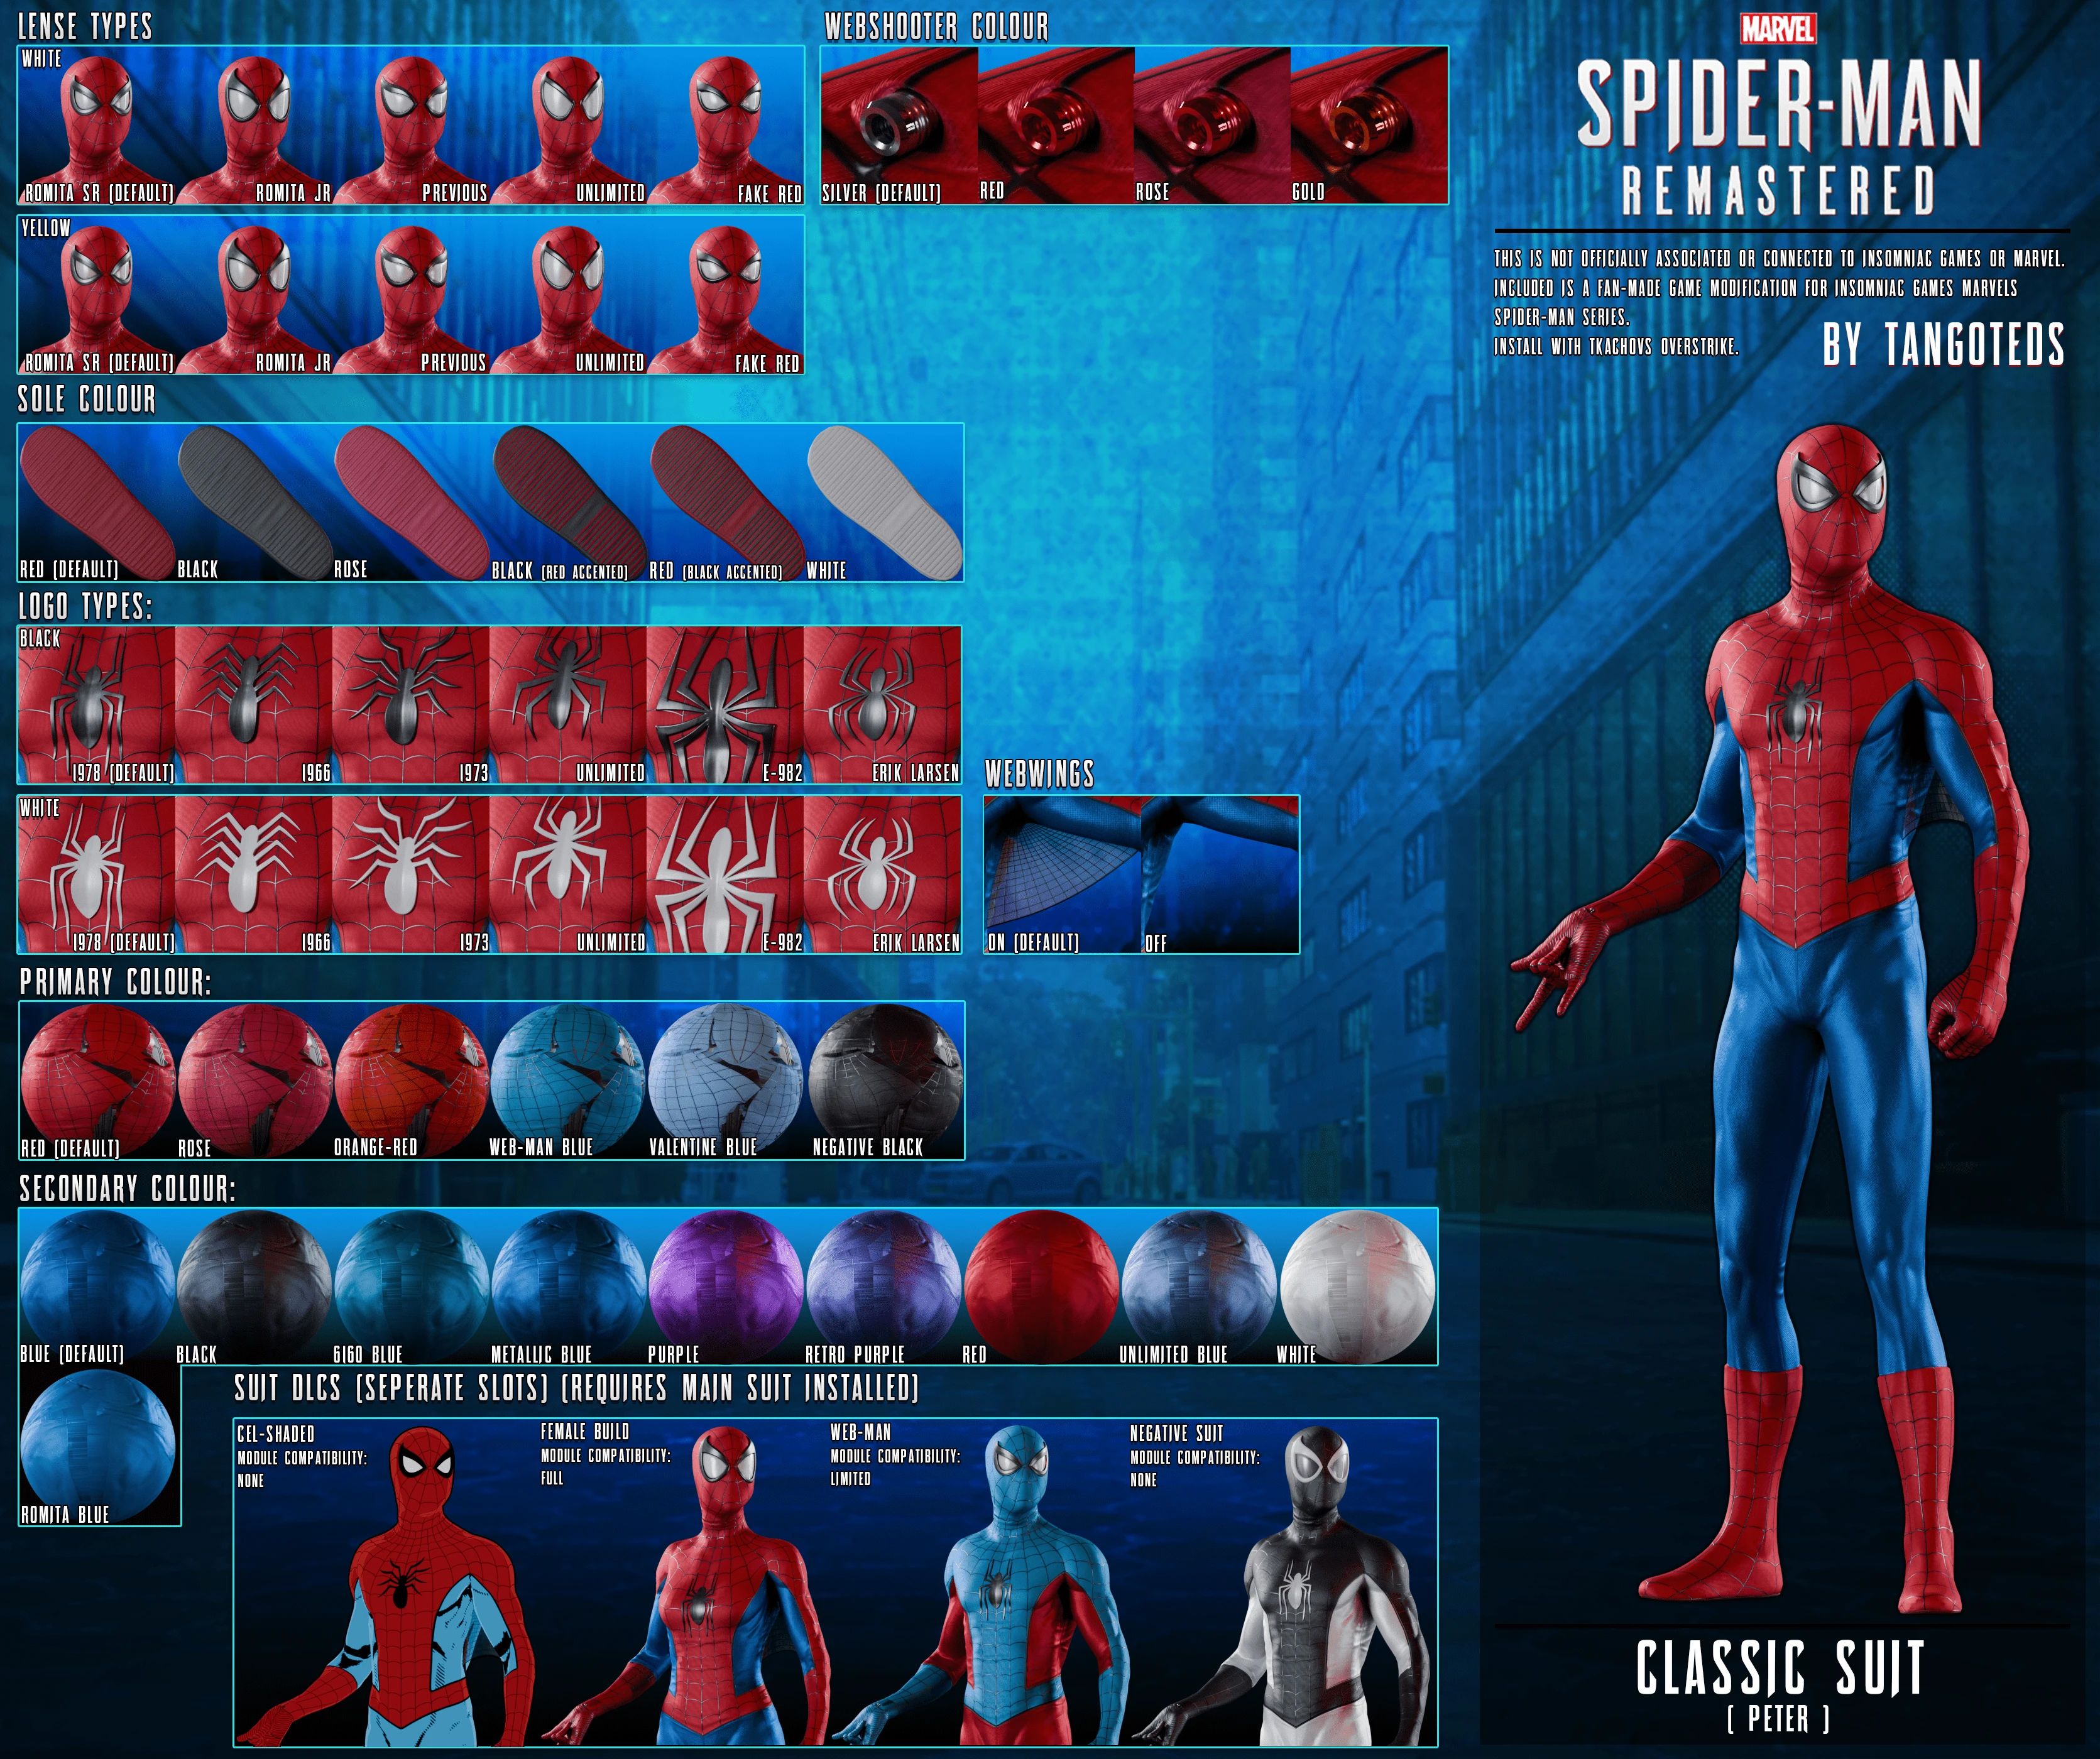 Spider-Man - TangoTeds modular classic suit